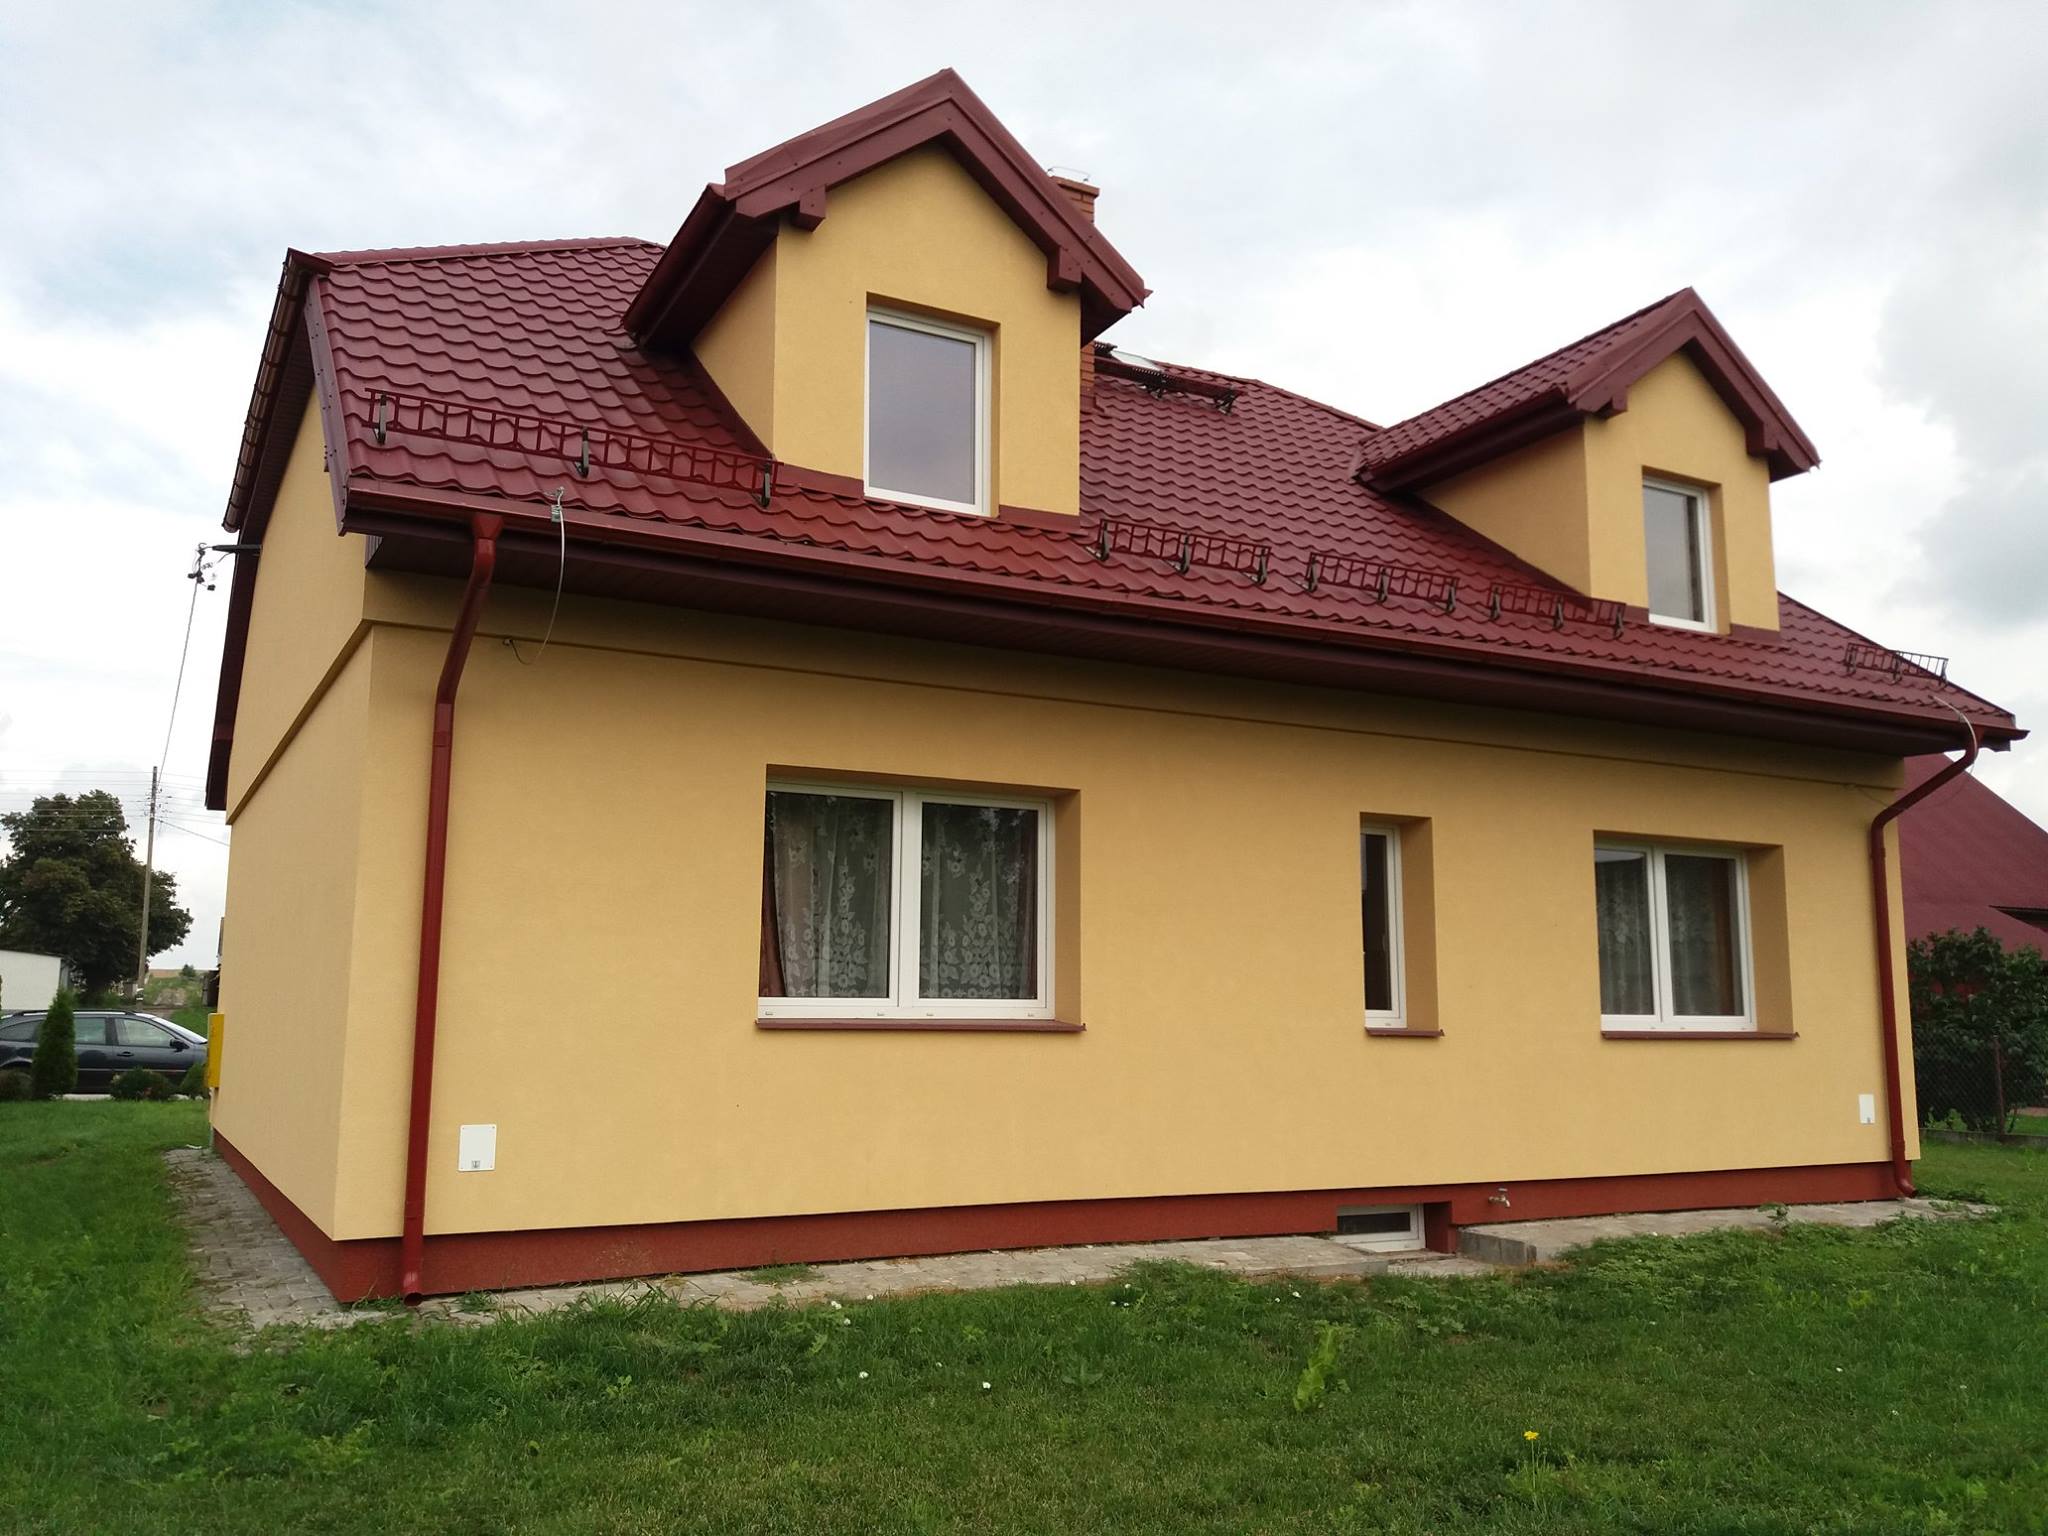 Przebudowa dachu i remont budynku Koła Gospodyń Wiejskich w Horyszowie Polskim